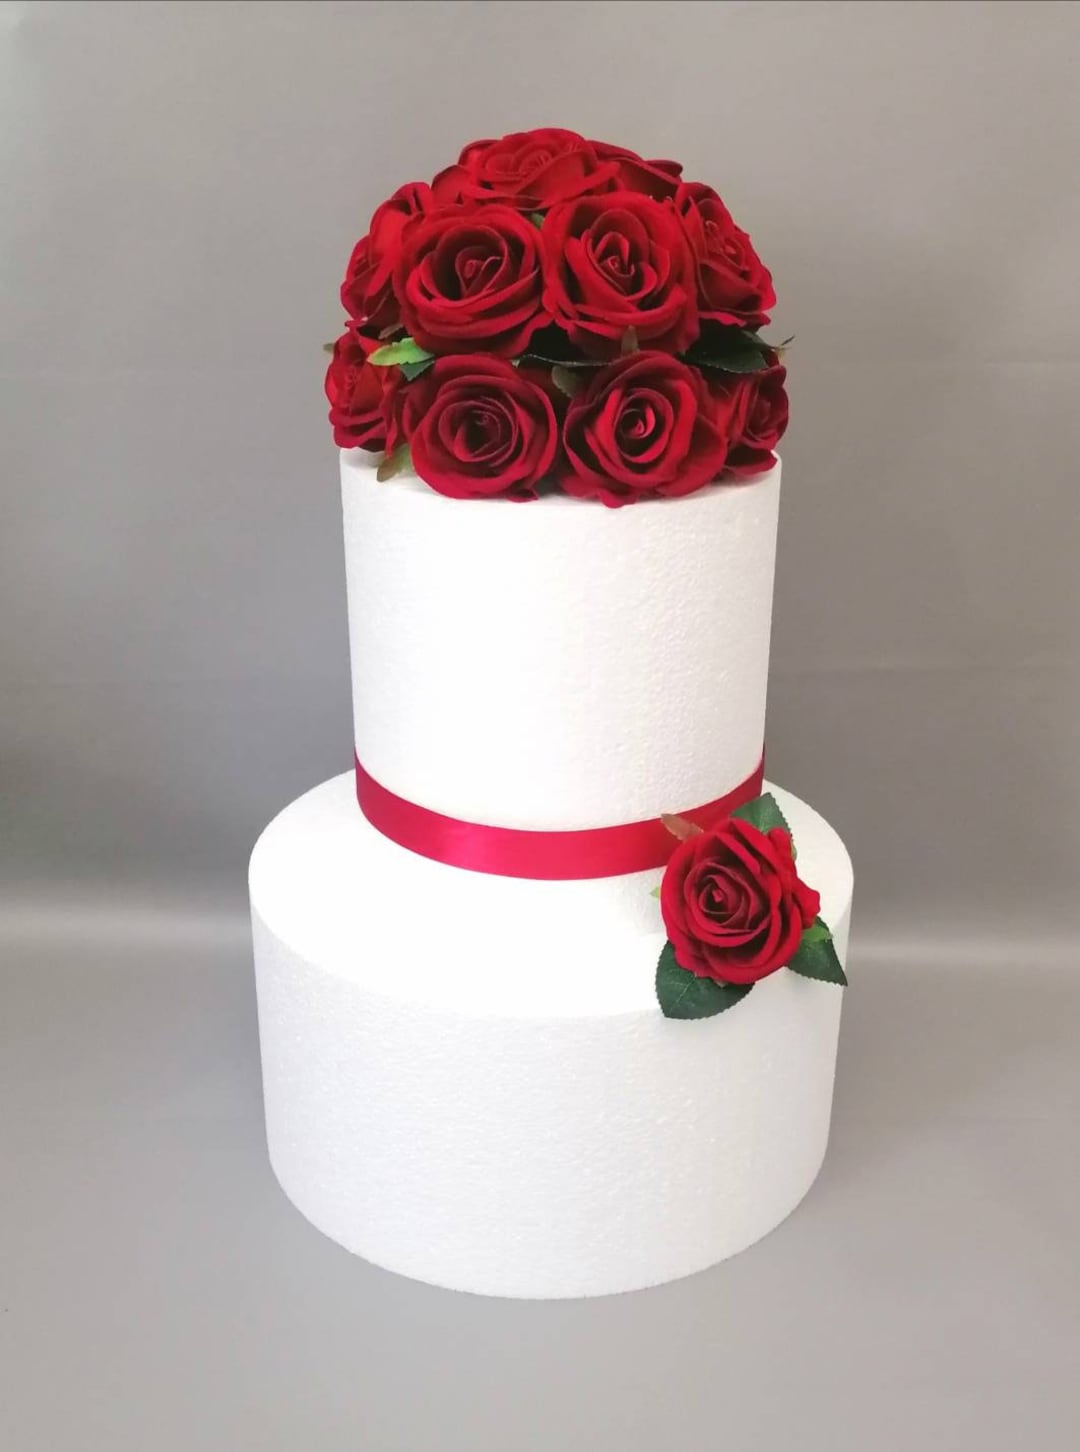 Red Rose Cake Topper Wedding Cake Decorations velvet Roses - Etsy